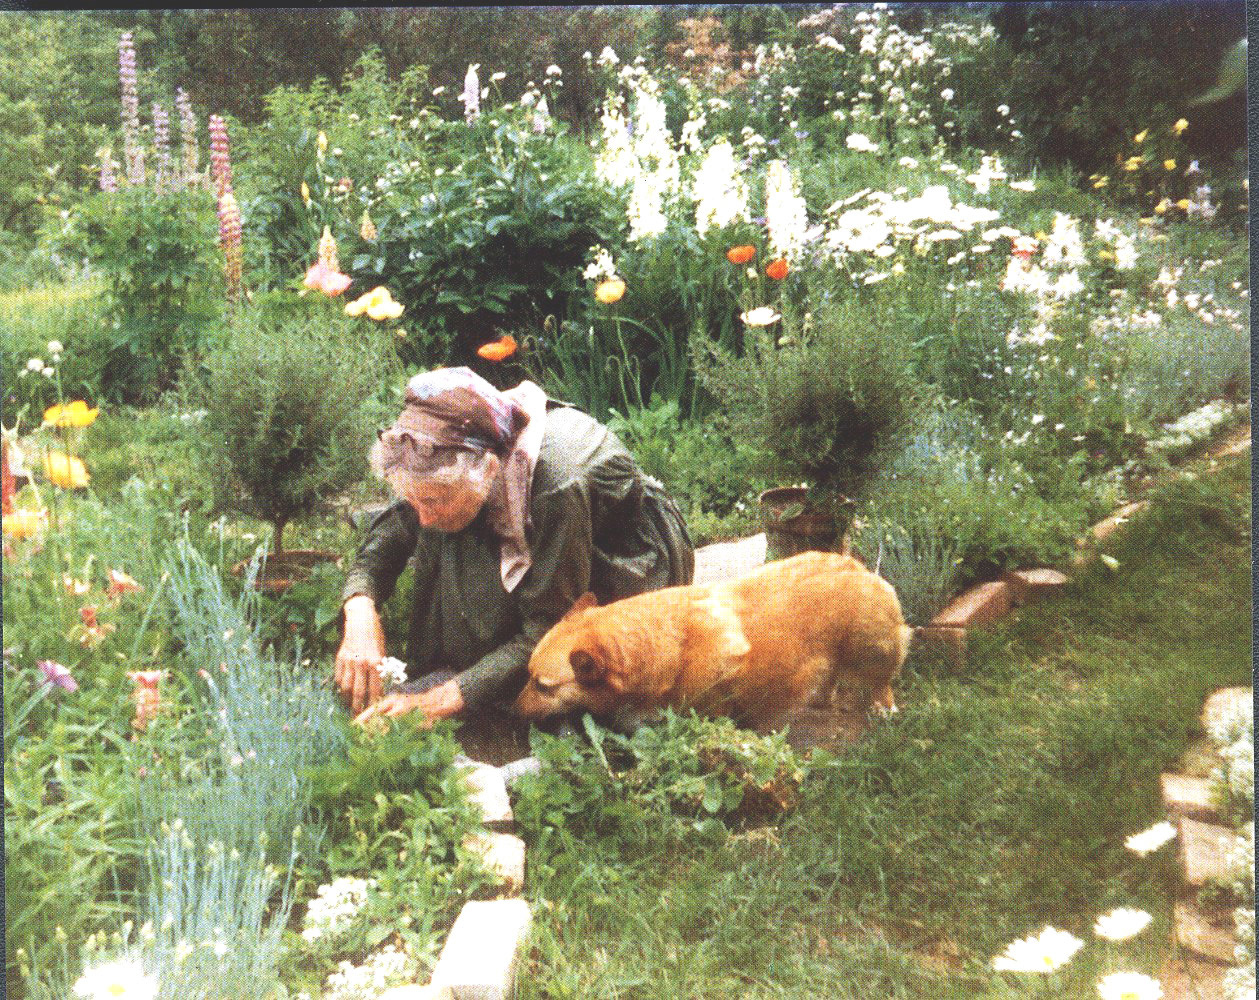 Cuộc sống an yên của cụ bà 92 tuổi bên khu vườn tự tay trồng hoa, rau quả ở vùng thôn quê - Ảnh 14.